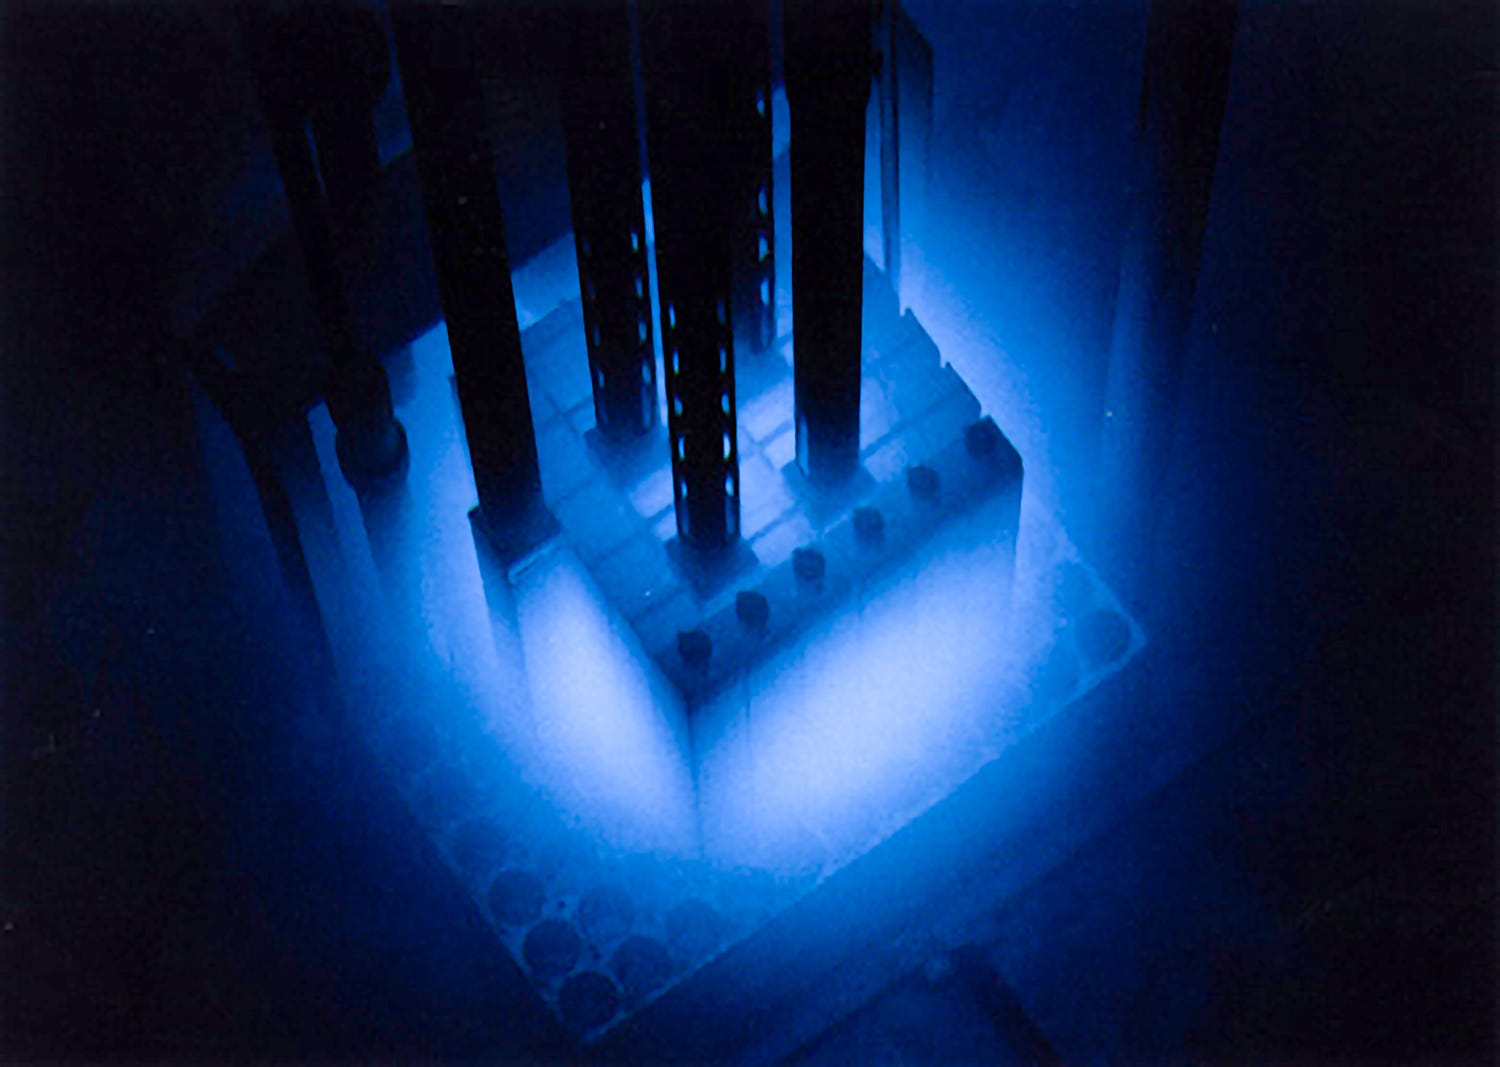 De Purdue University Reactor Number One (PUR-1) is de eerste kernreactor in de VS met volledig digitale besturing. Hier gloeit de kern blauw door de Cherenkovstraling.